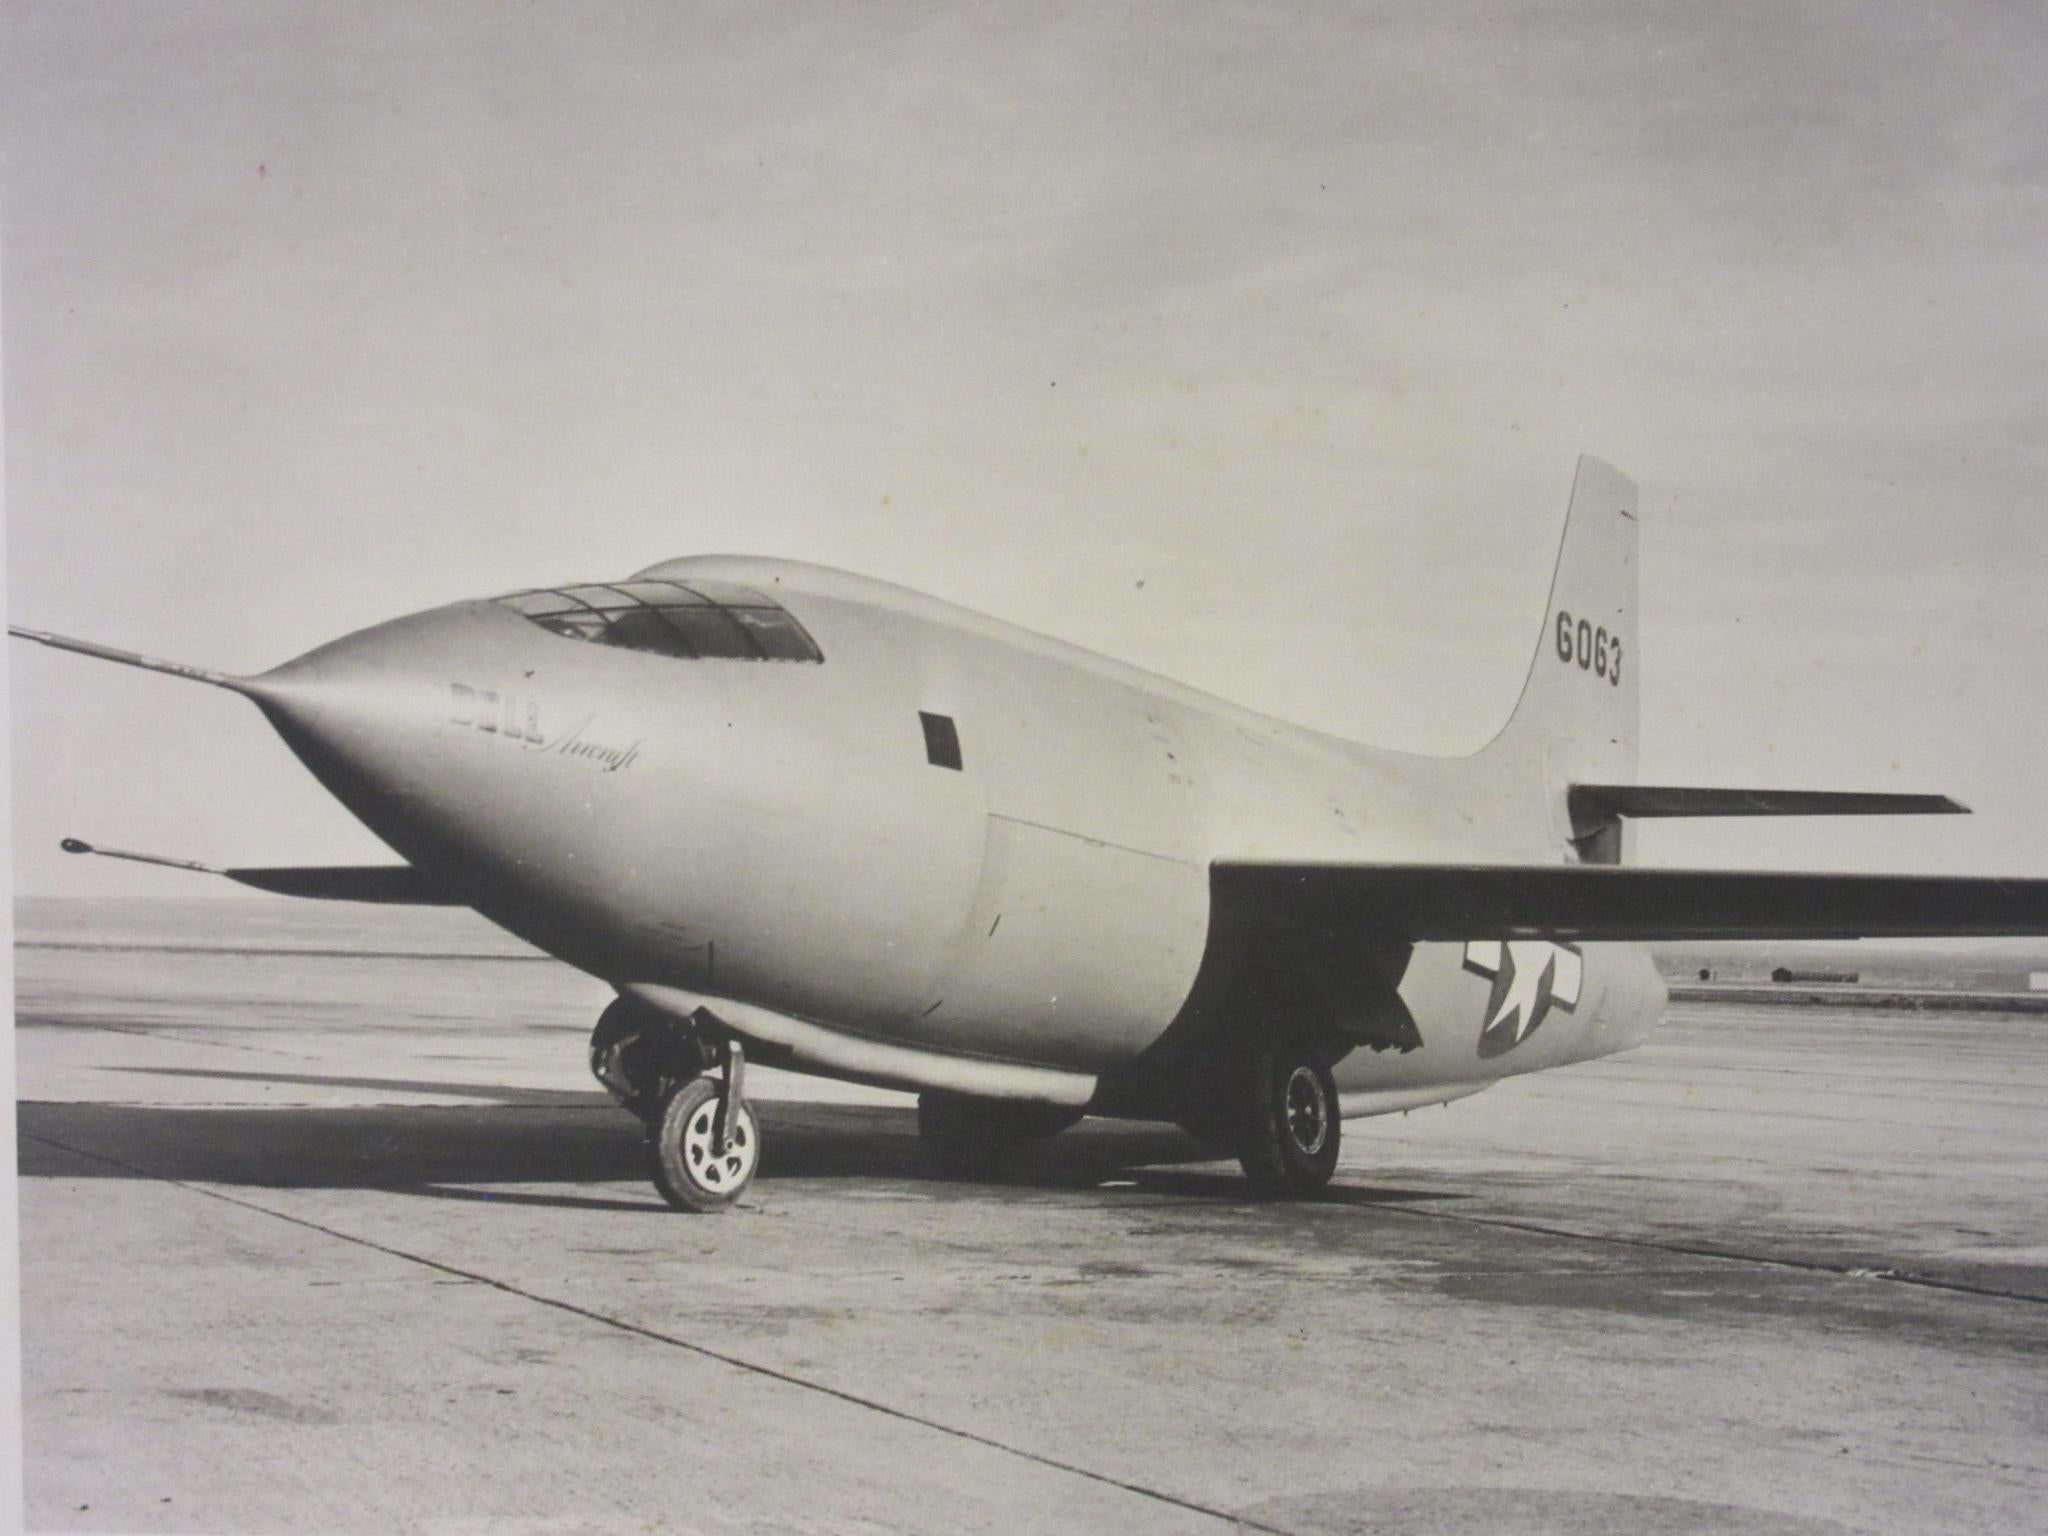 Ein Herstellerfoto eines der historischen X-1 Superschallflugzeuge, die mit Piloten wie dem legendären Charles (Chuck) E. Yeager am 14. Oktober 1947 erstmals die Schallmauer durchbrachen. Das Flugzeug mit der Hecknummer 6063 könnte dasjenige sein,